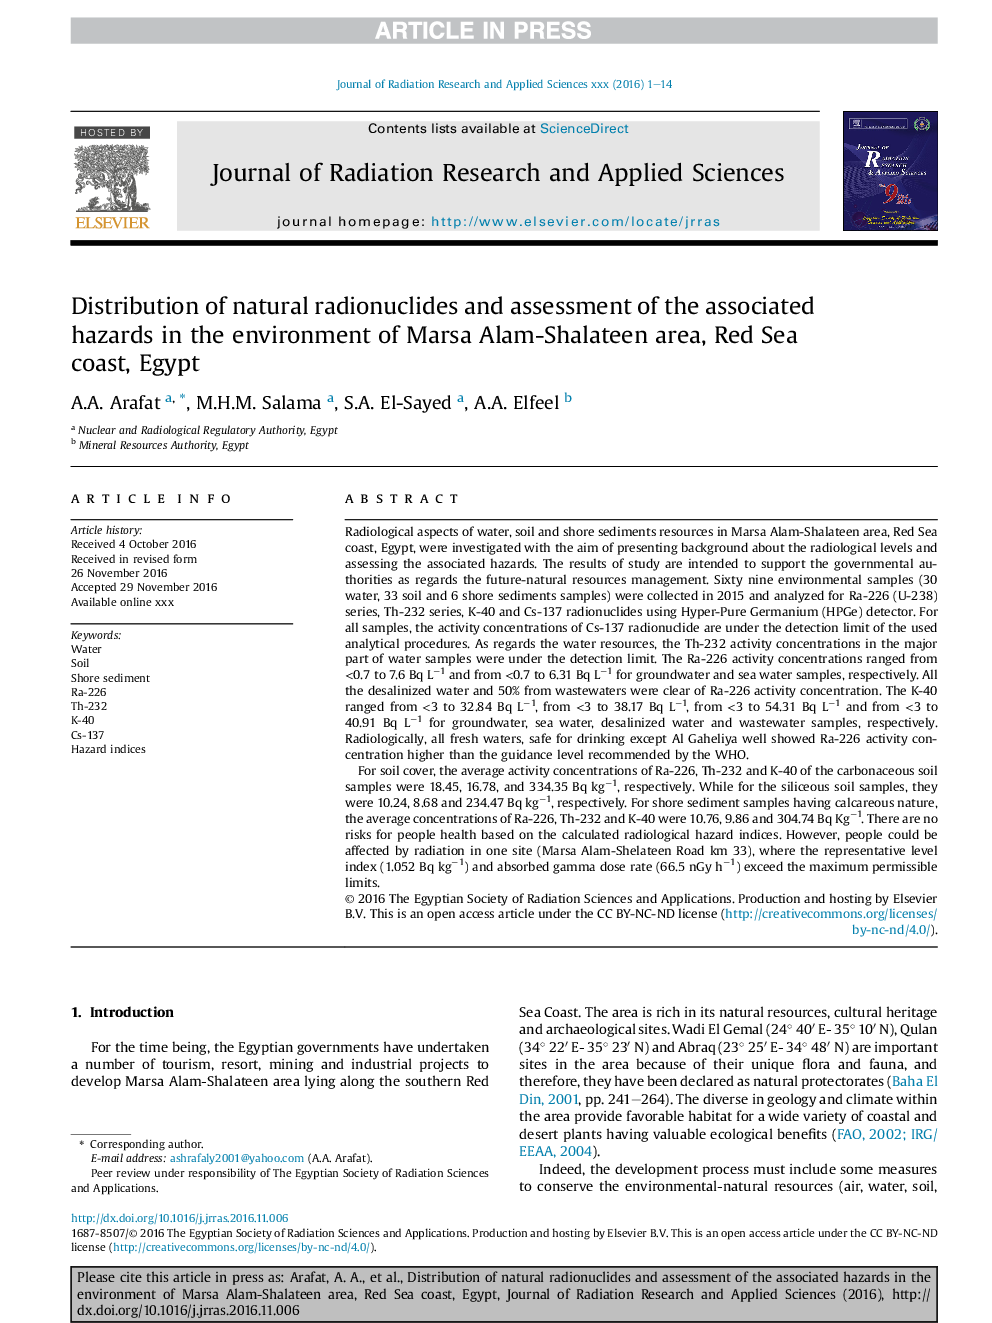 توزیع رادیونوکلئید طبیعی و ارزیابی خطرات مرتبط با آن در محدوده مریسا آلام شالاتین، ساحل دریای سرخ، مصر 